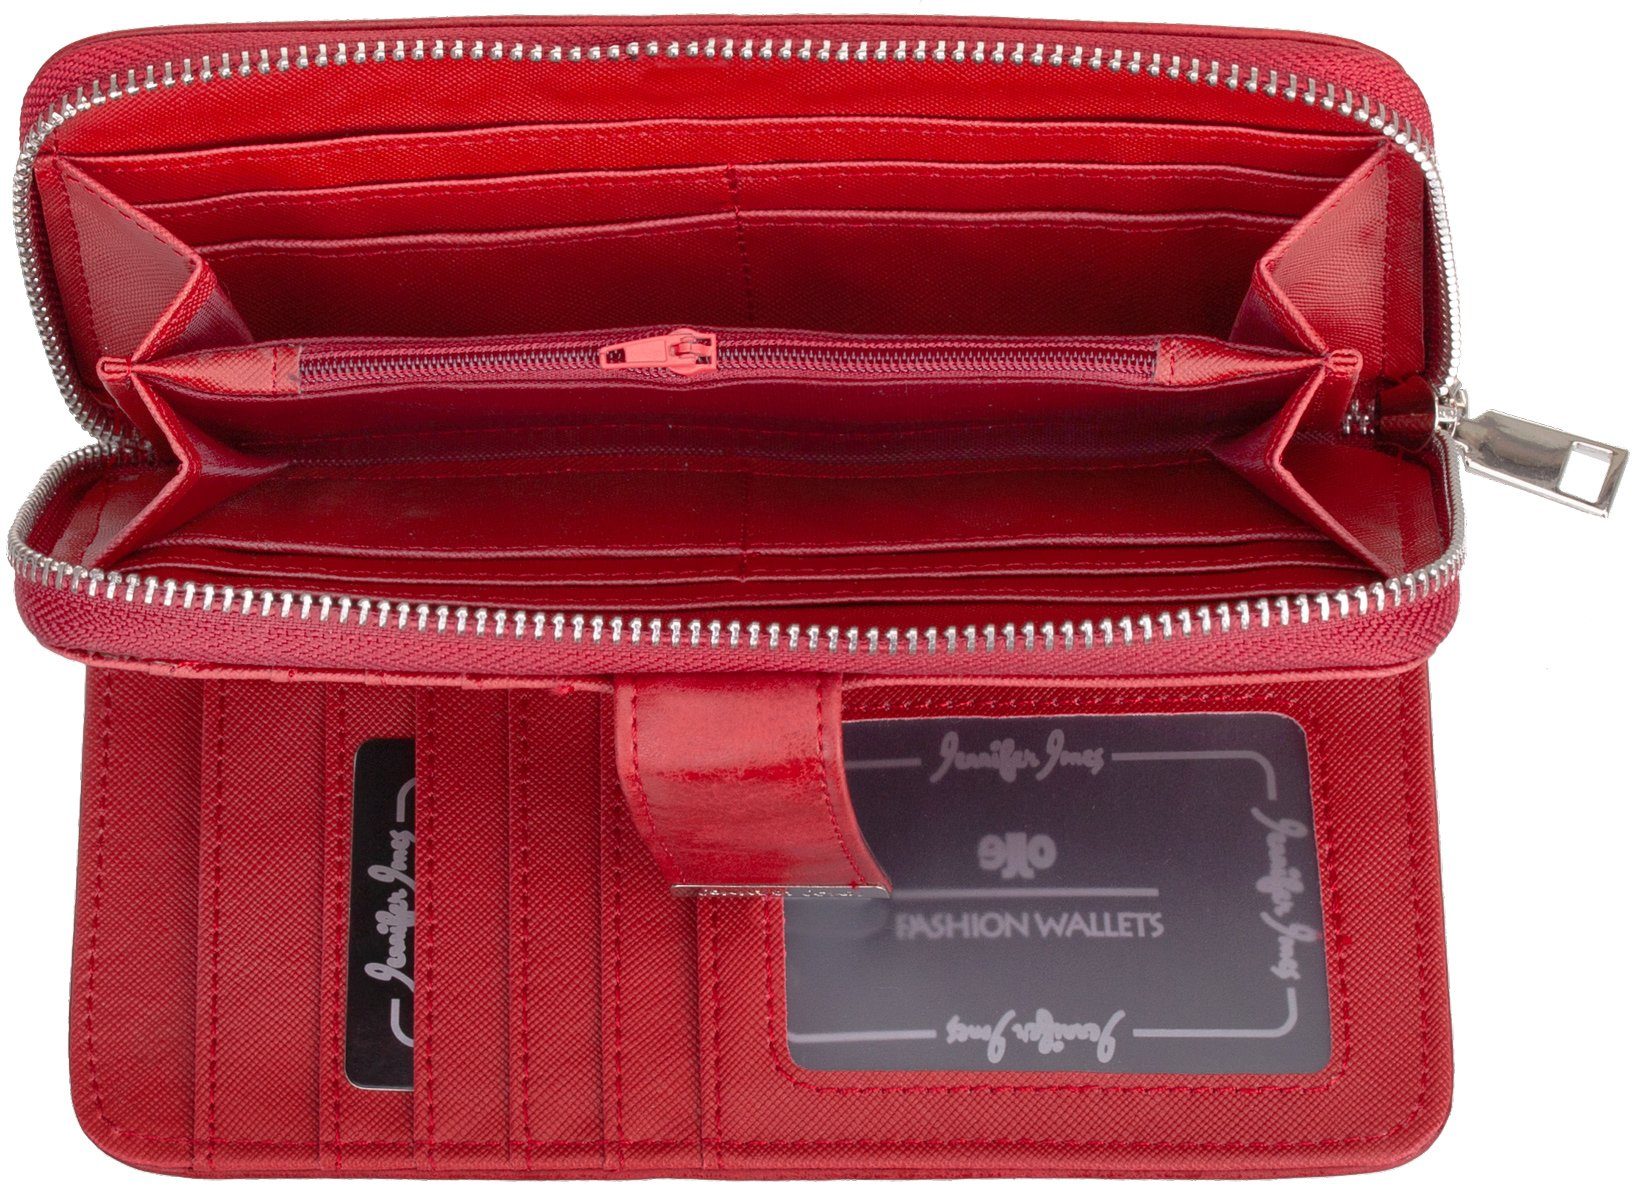 Jones Jennifer Geldbörse klappbar Portemonnaie Reißverschluss rot Damen mit Geldbeutel Geldbörse,